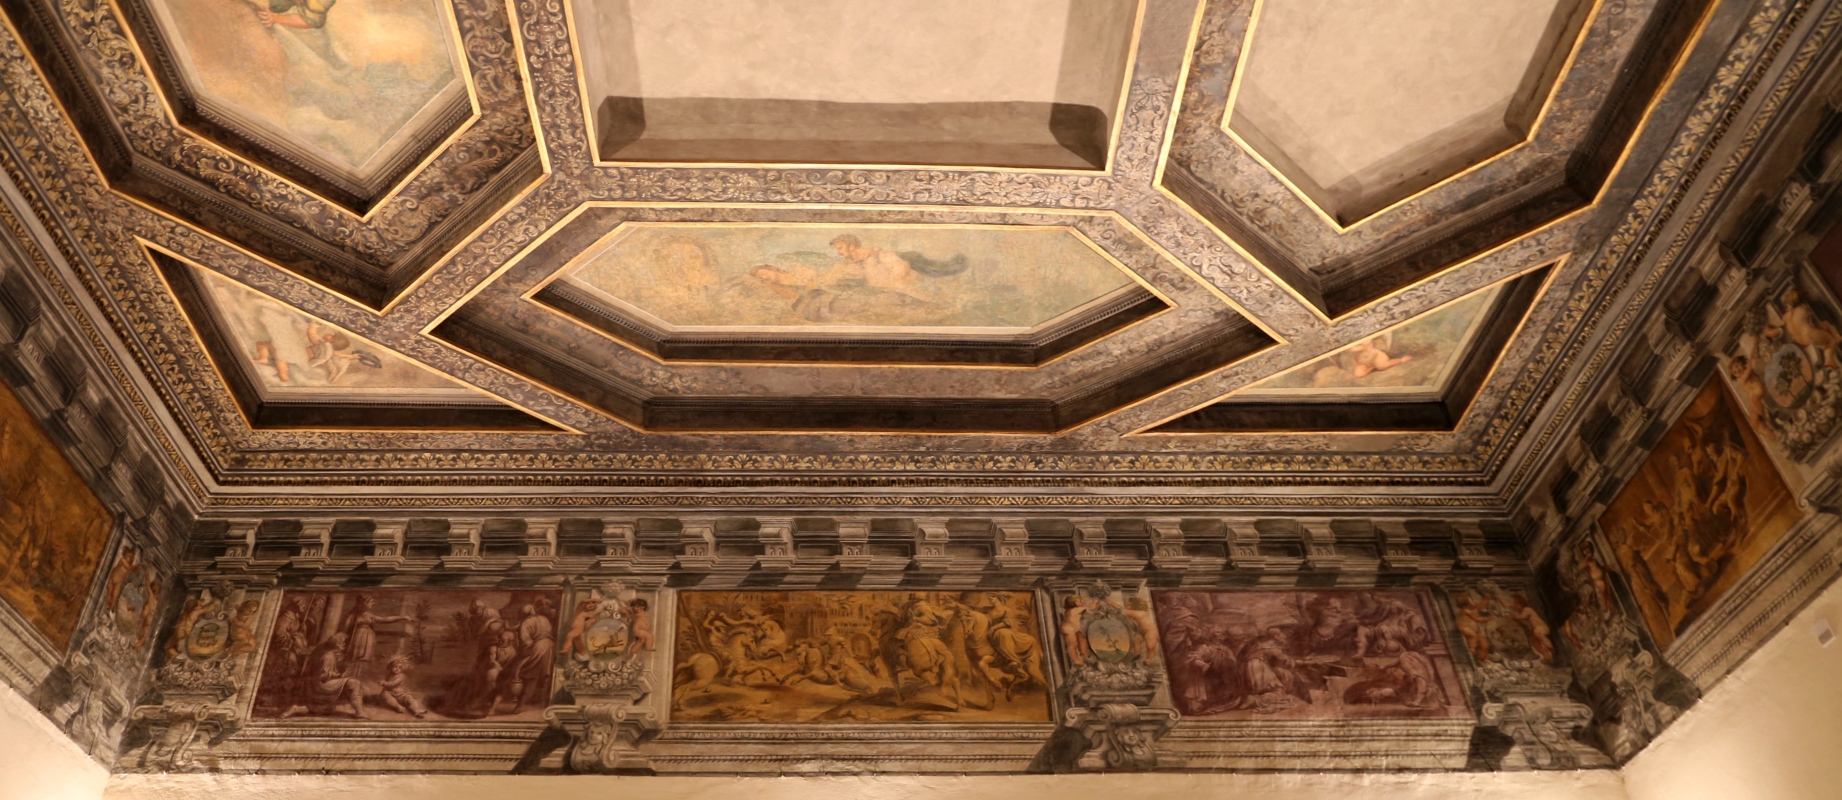 Gualtieri, palazzo bentivoglio, sala di icaro, fregio con storie di roma da tito livio, 1600-05 circa, 02 - Sailko